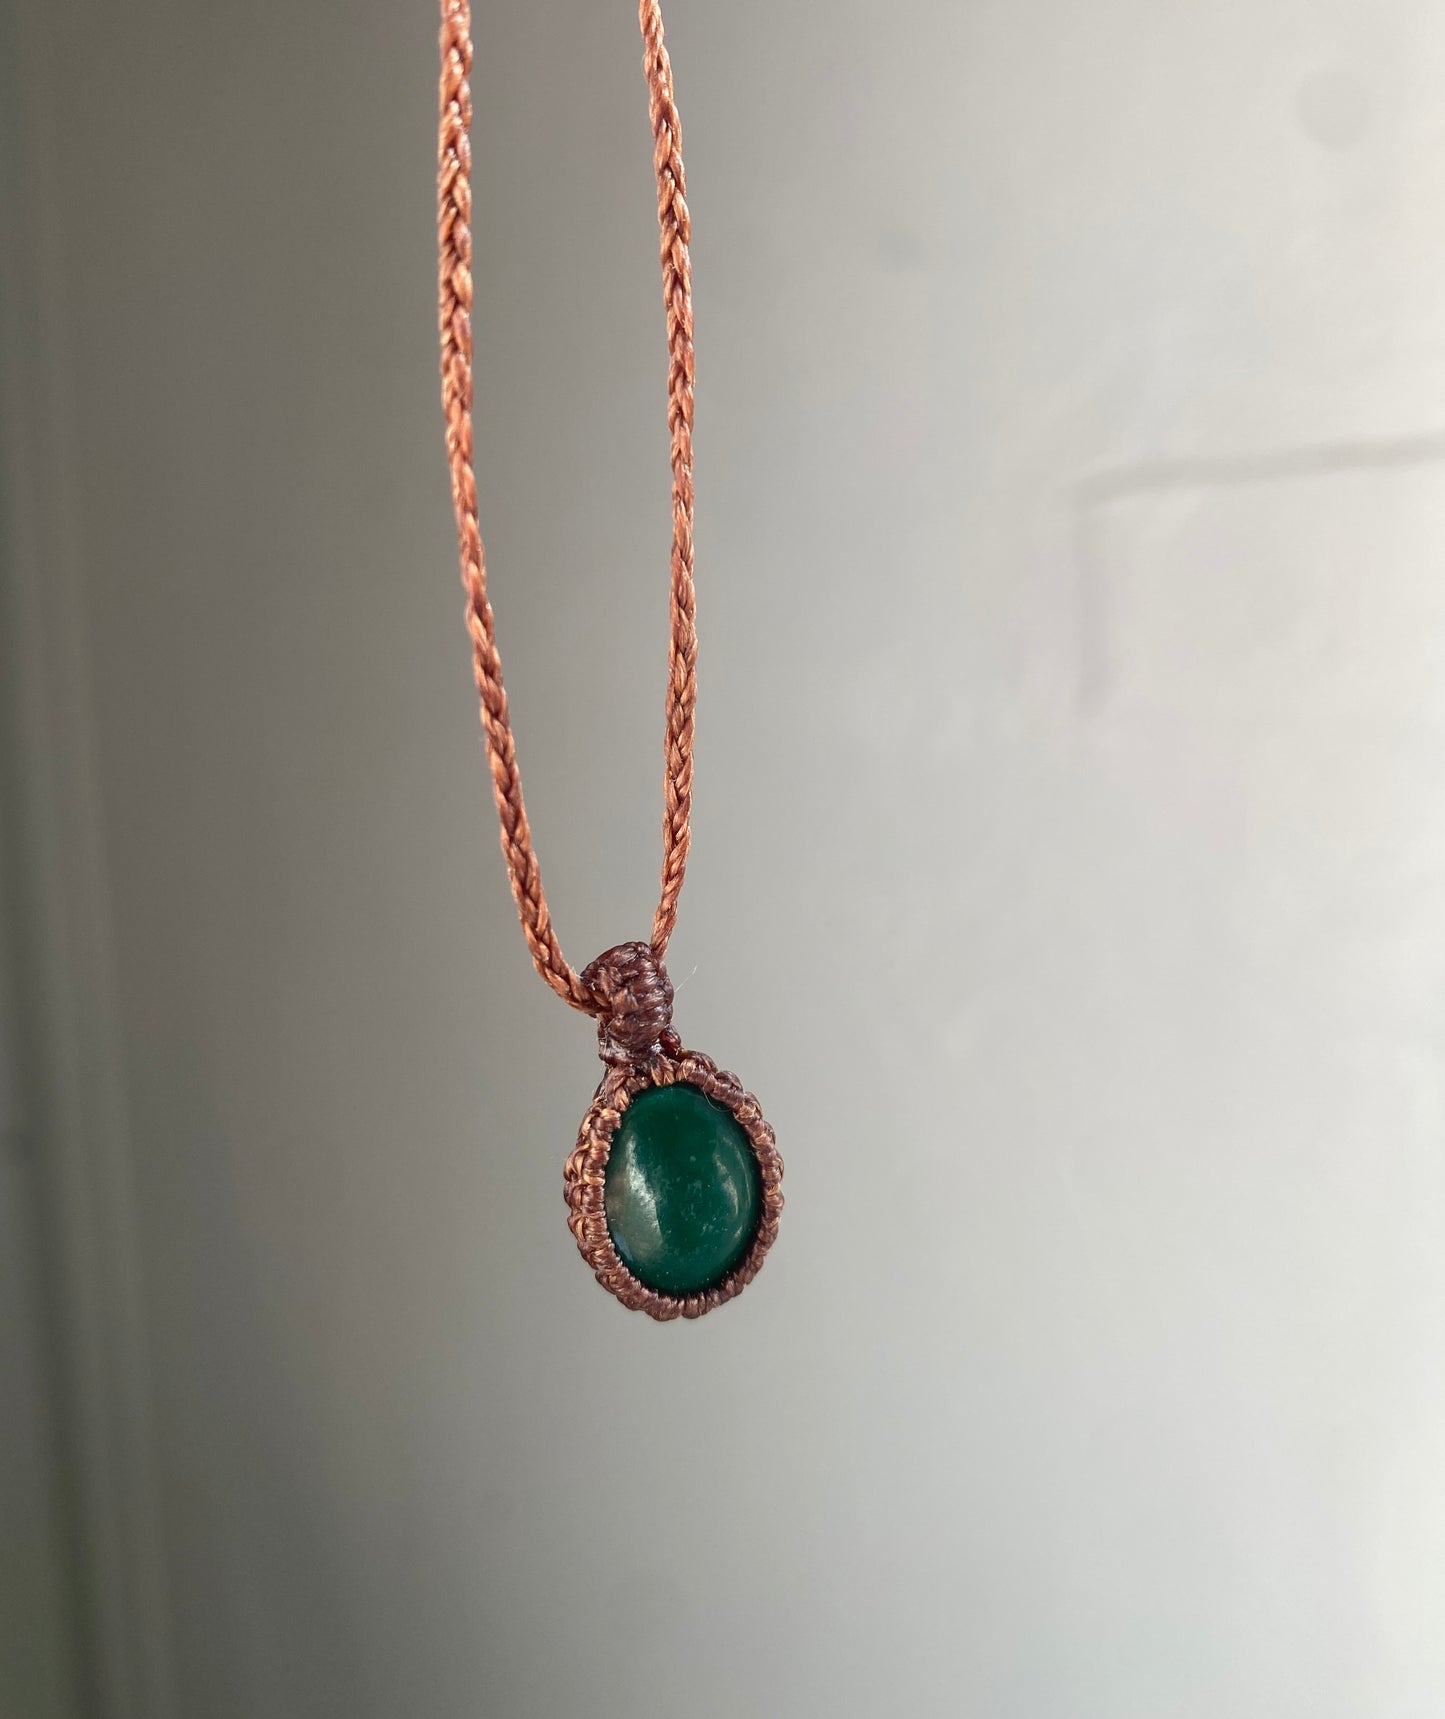 Collier artisanal - Malachite et corde brune